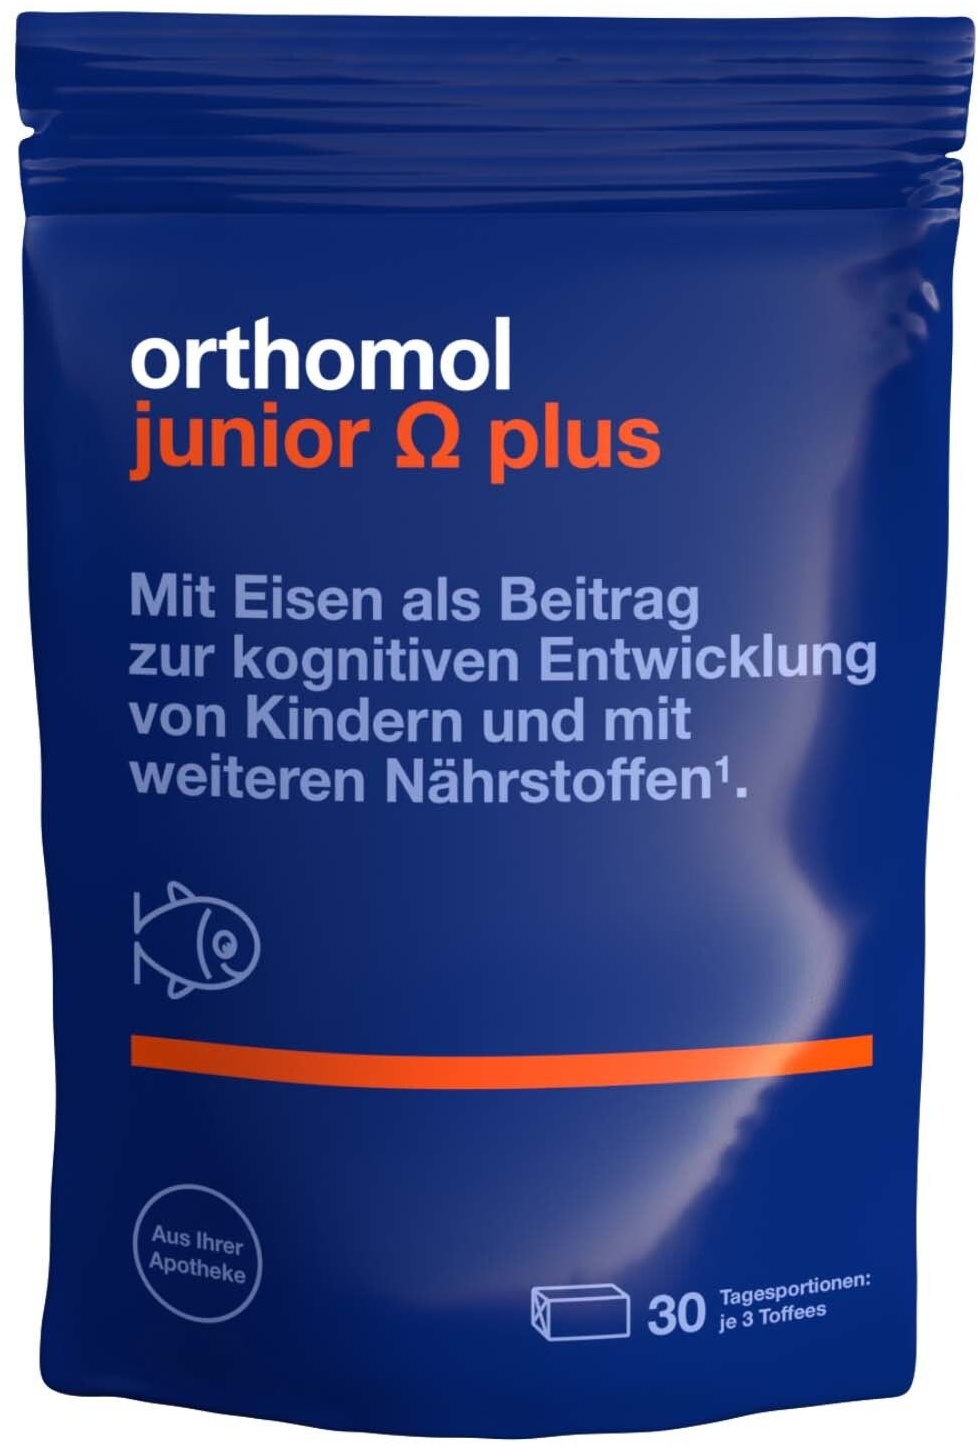 Orthomol junior Omega plus - zur kognitiven Entwicklung bei Kindern mit Eisen, Omega-3-Fettsäuren und Vitamin B12 Kaudragees 30 St 30 St Kaudragees